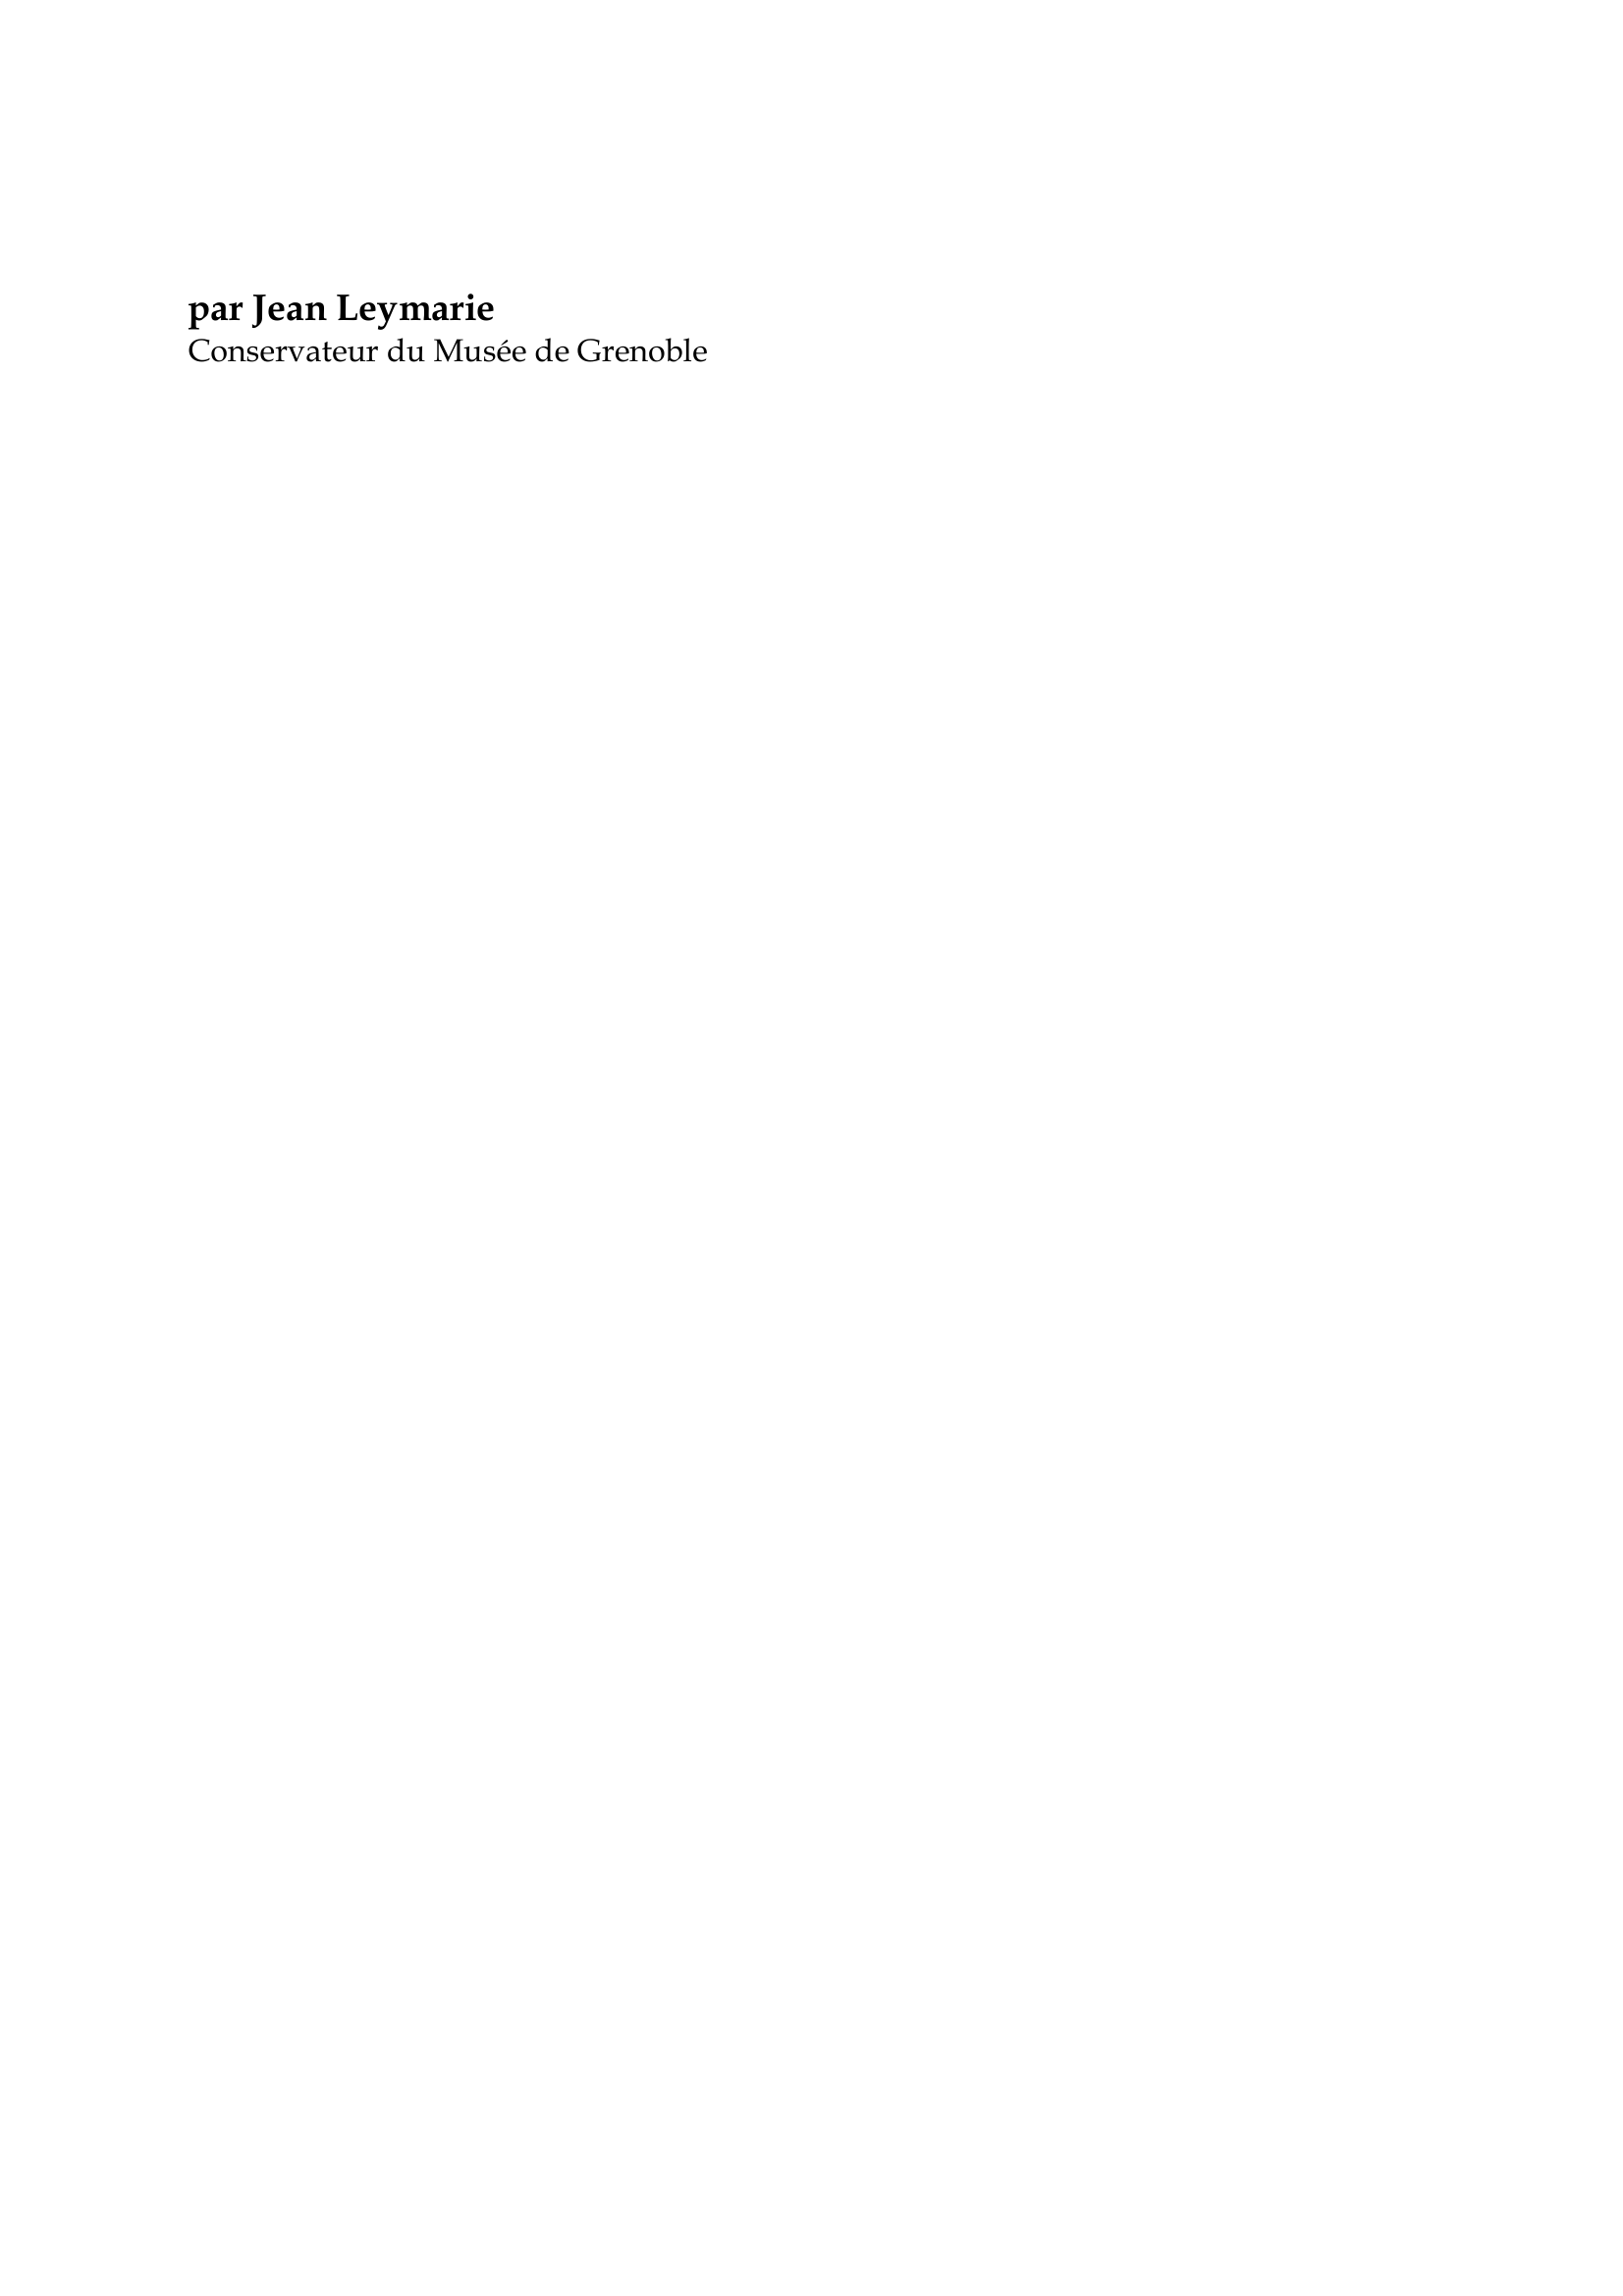 Prévisualisation du document Edouard Manet

par Jean Leymarie
Conservateur du Musée de Grenoble

Manet convoque dans une-ultime sommation l'héritage éternel des musées
et libère en même temps les brusques nouveautés de la peinture moderne.